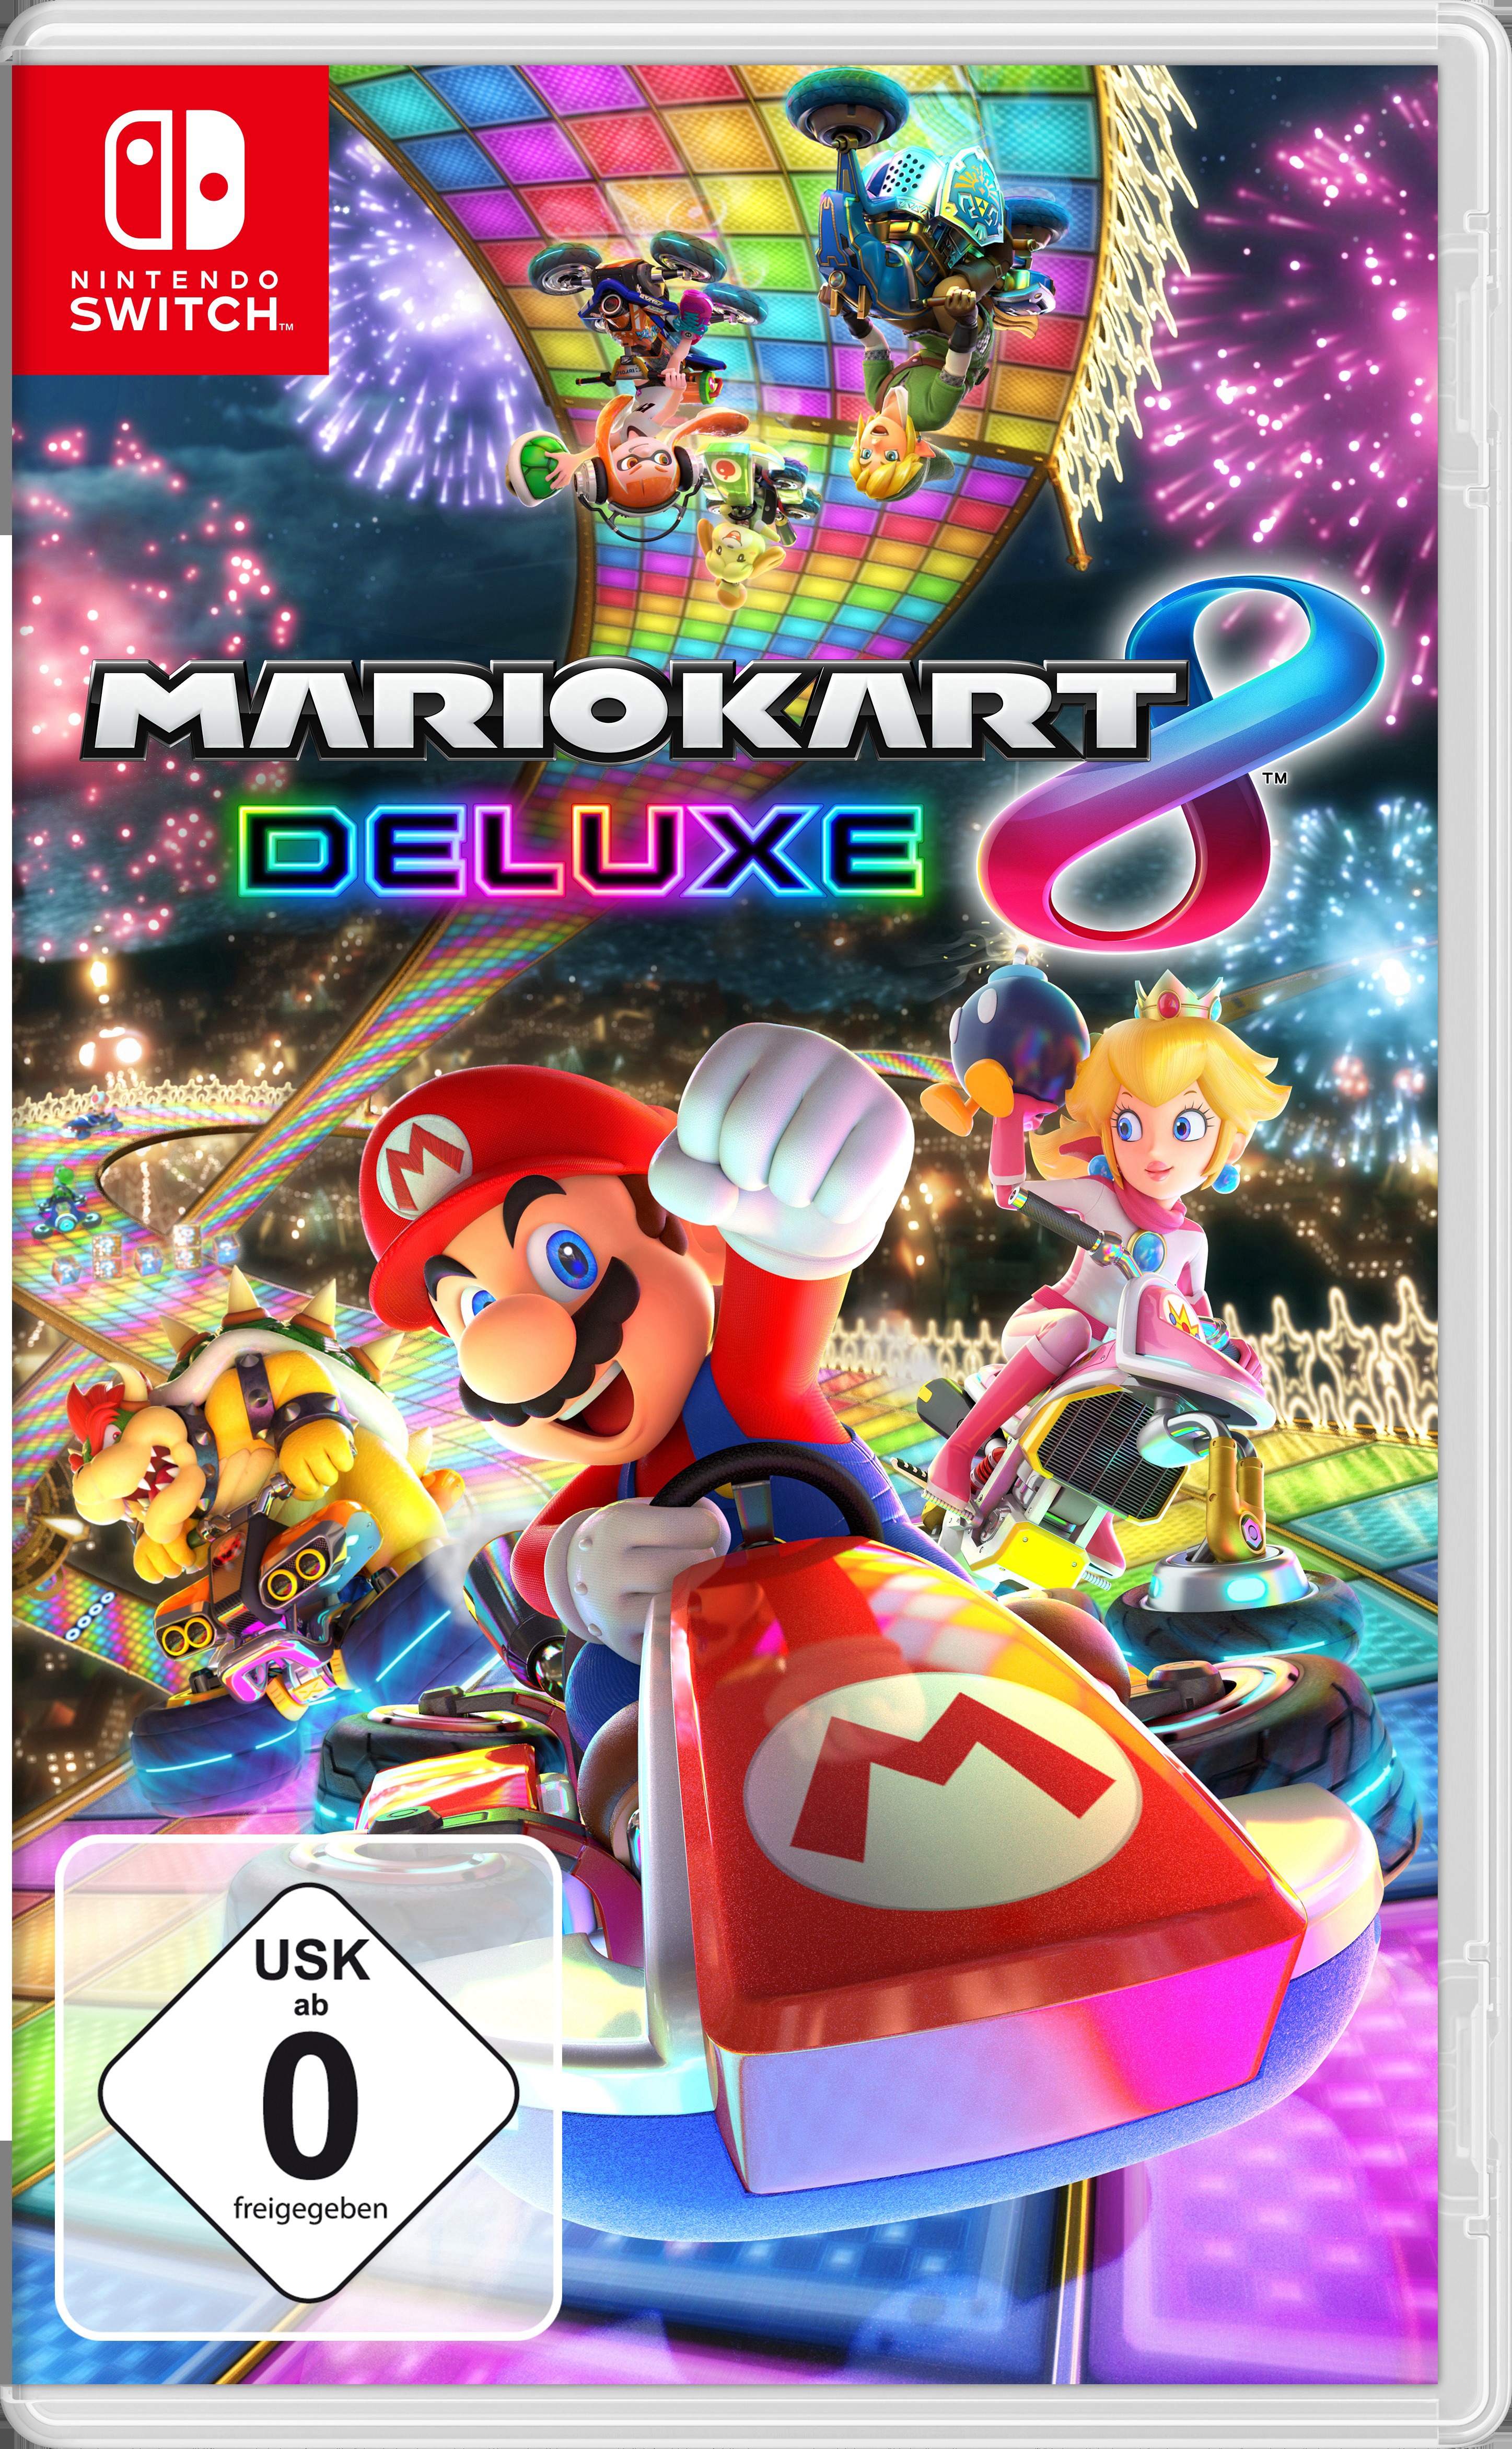 Kart 8 Switch] - Mario [Nintendo Deluxe